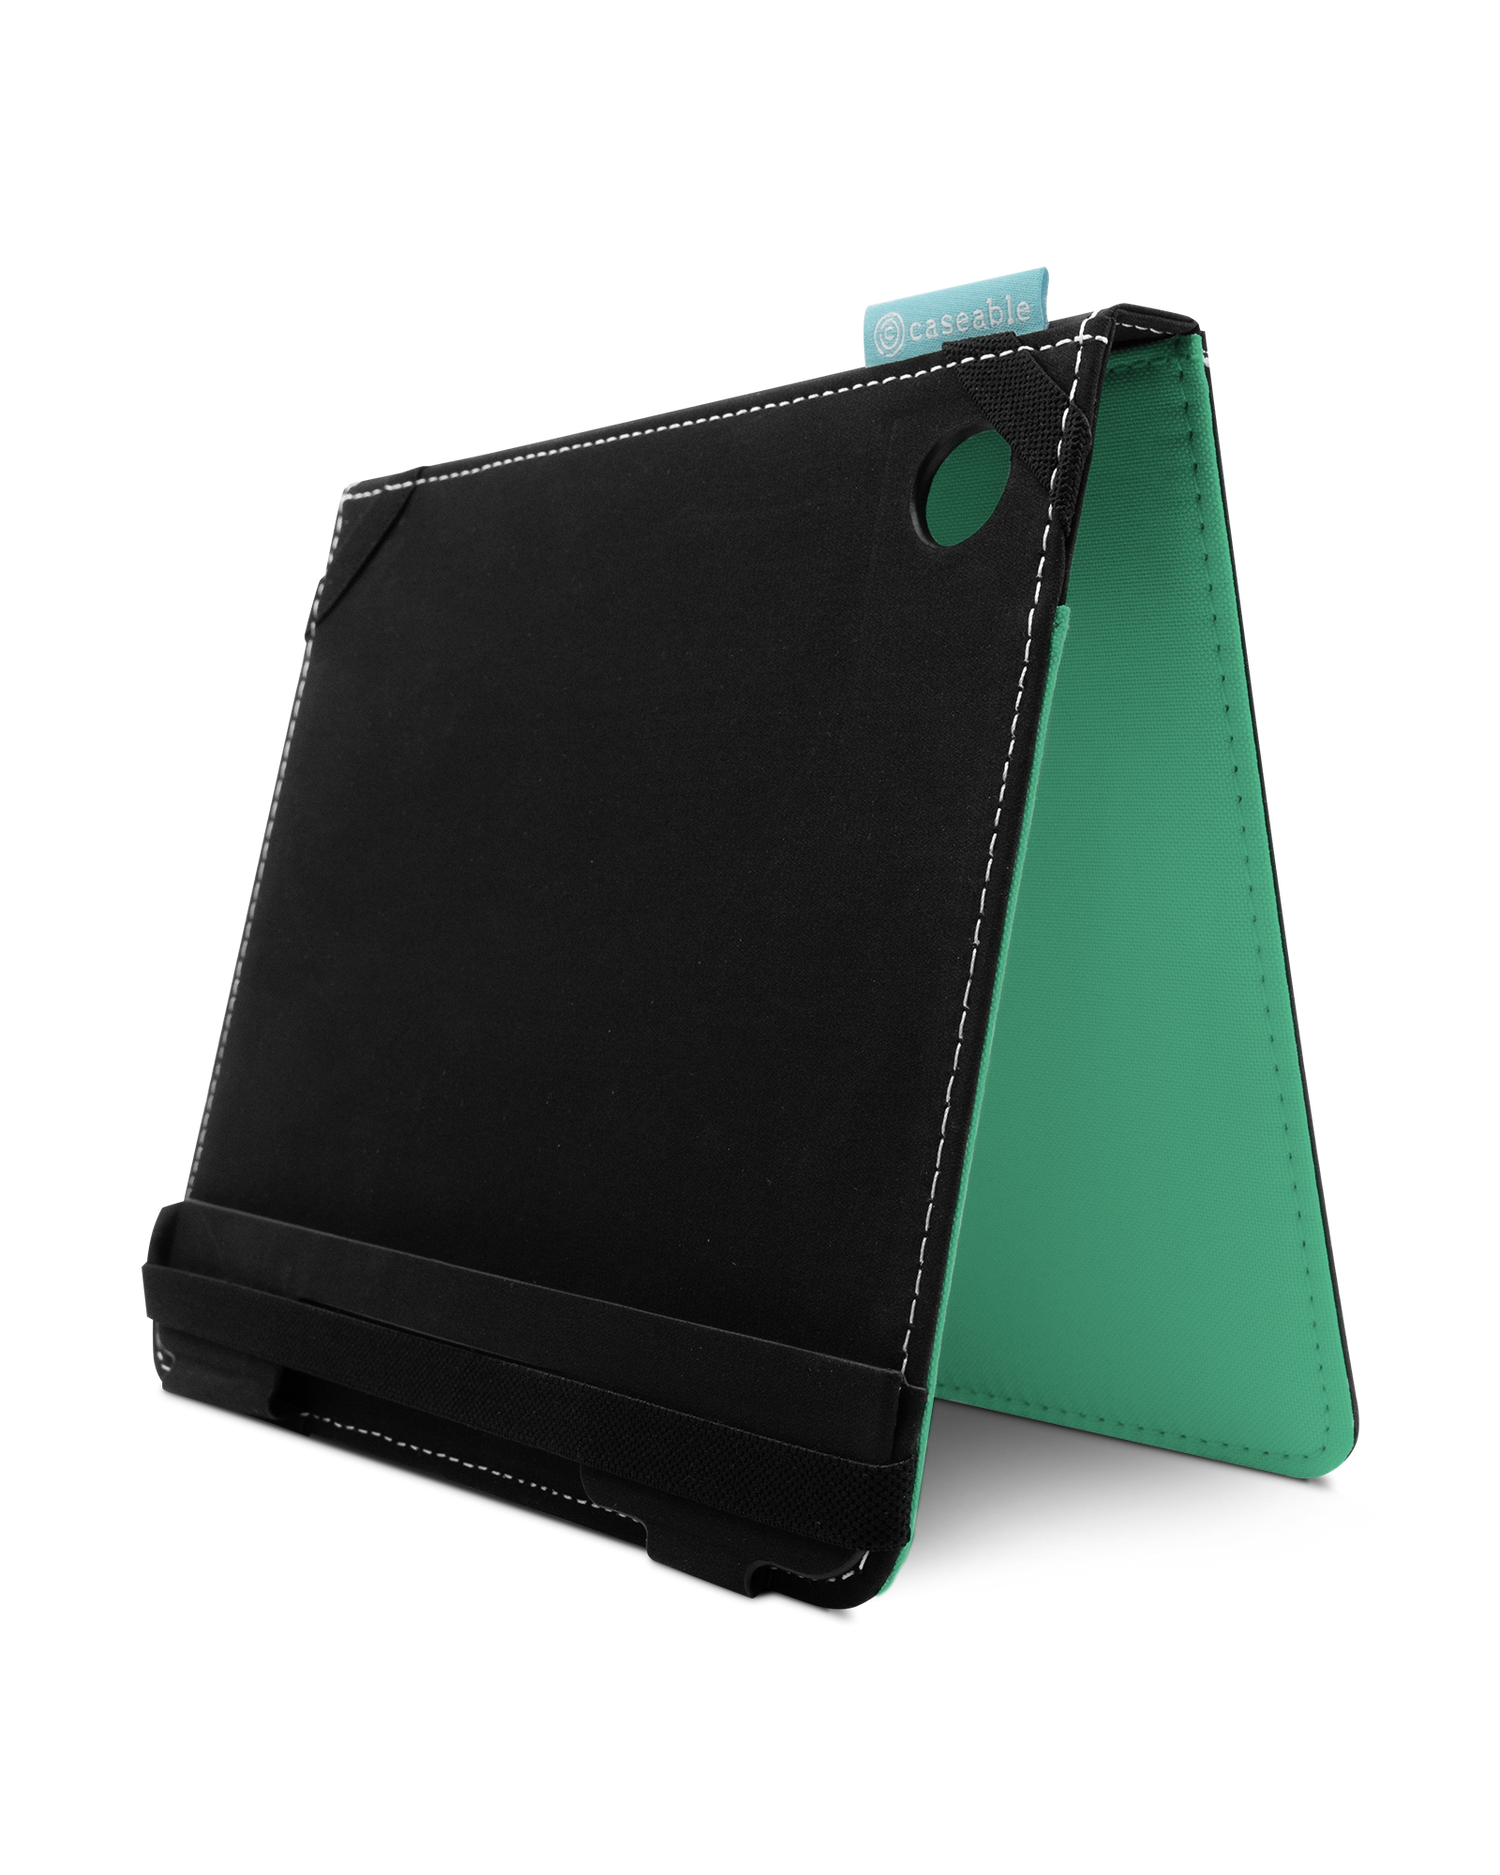 ISG Neon Green eBook-Reader Hülle für tolino epos 3: Aufgestellt im Querformat